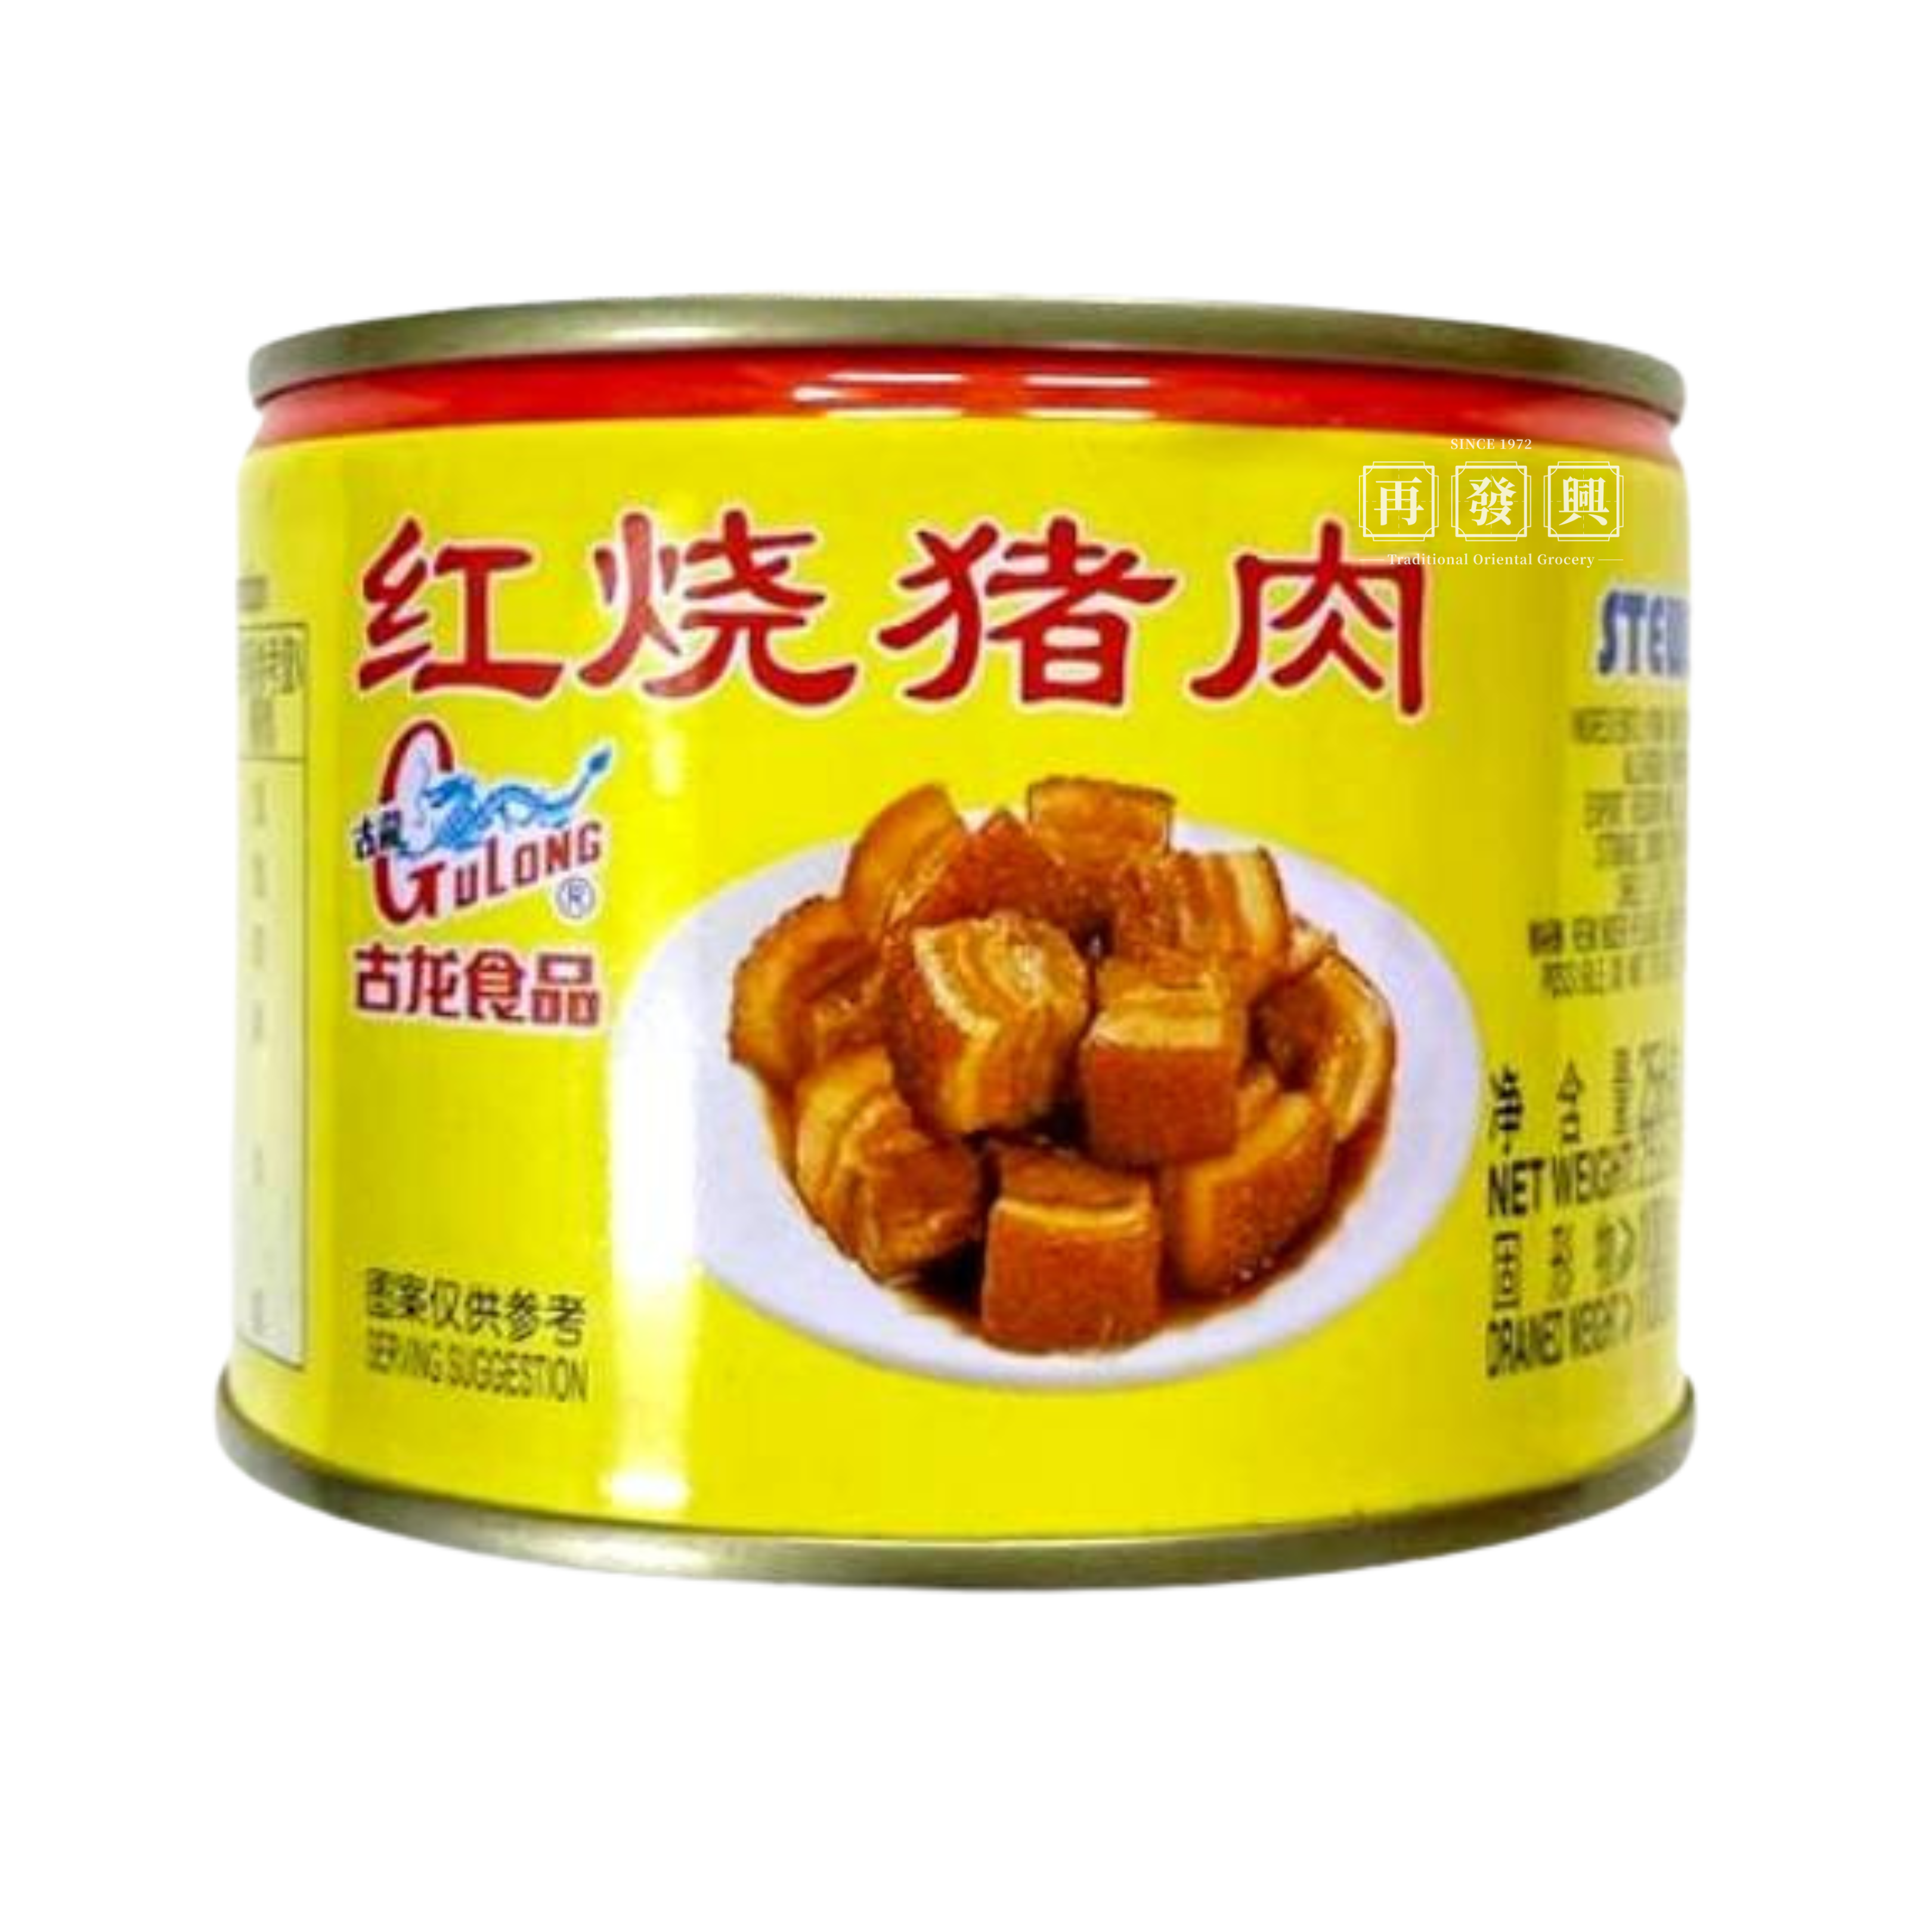 GuLong Stewed Pork (S) 古龙红烧猪肉(小) 256g